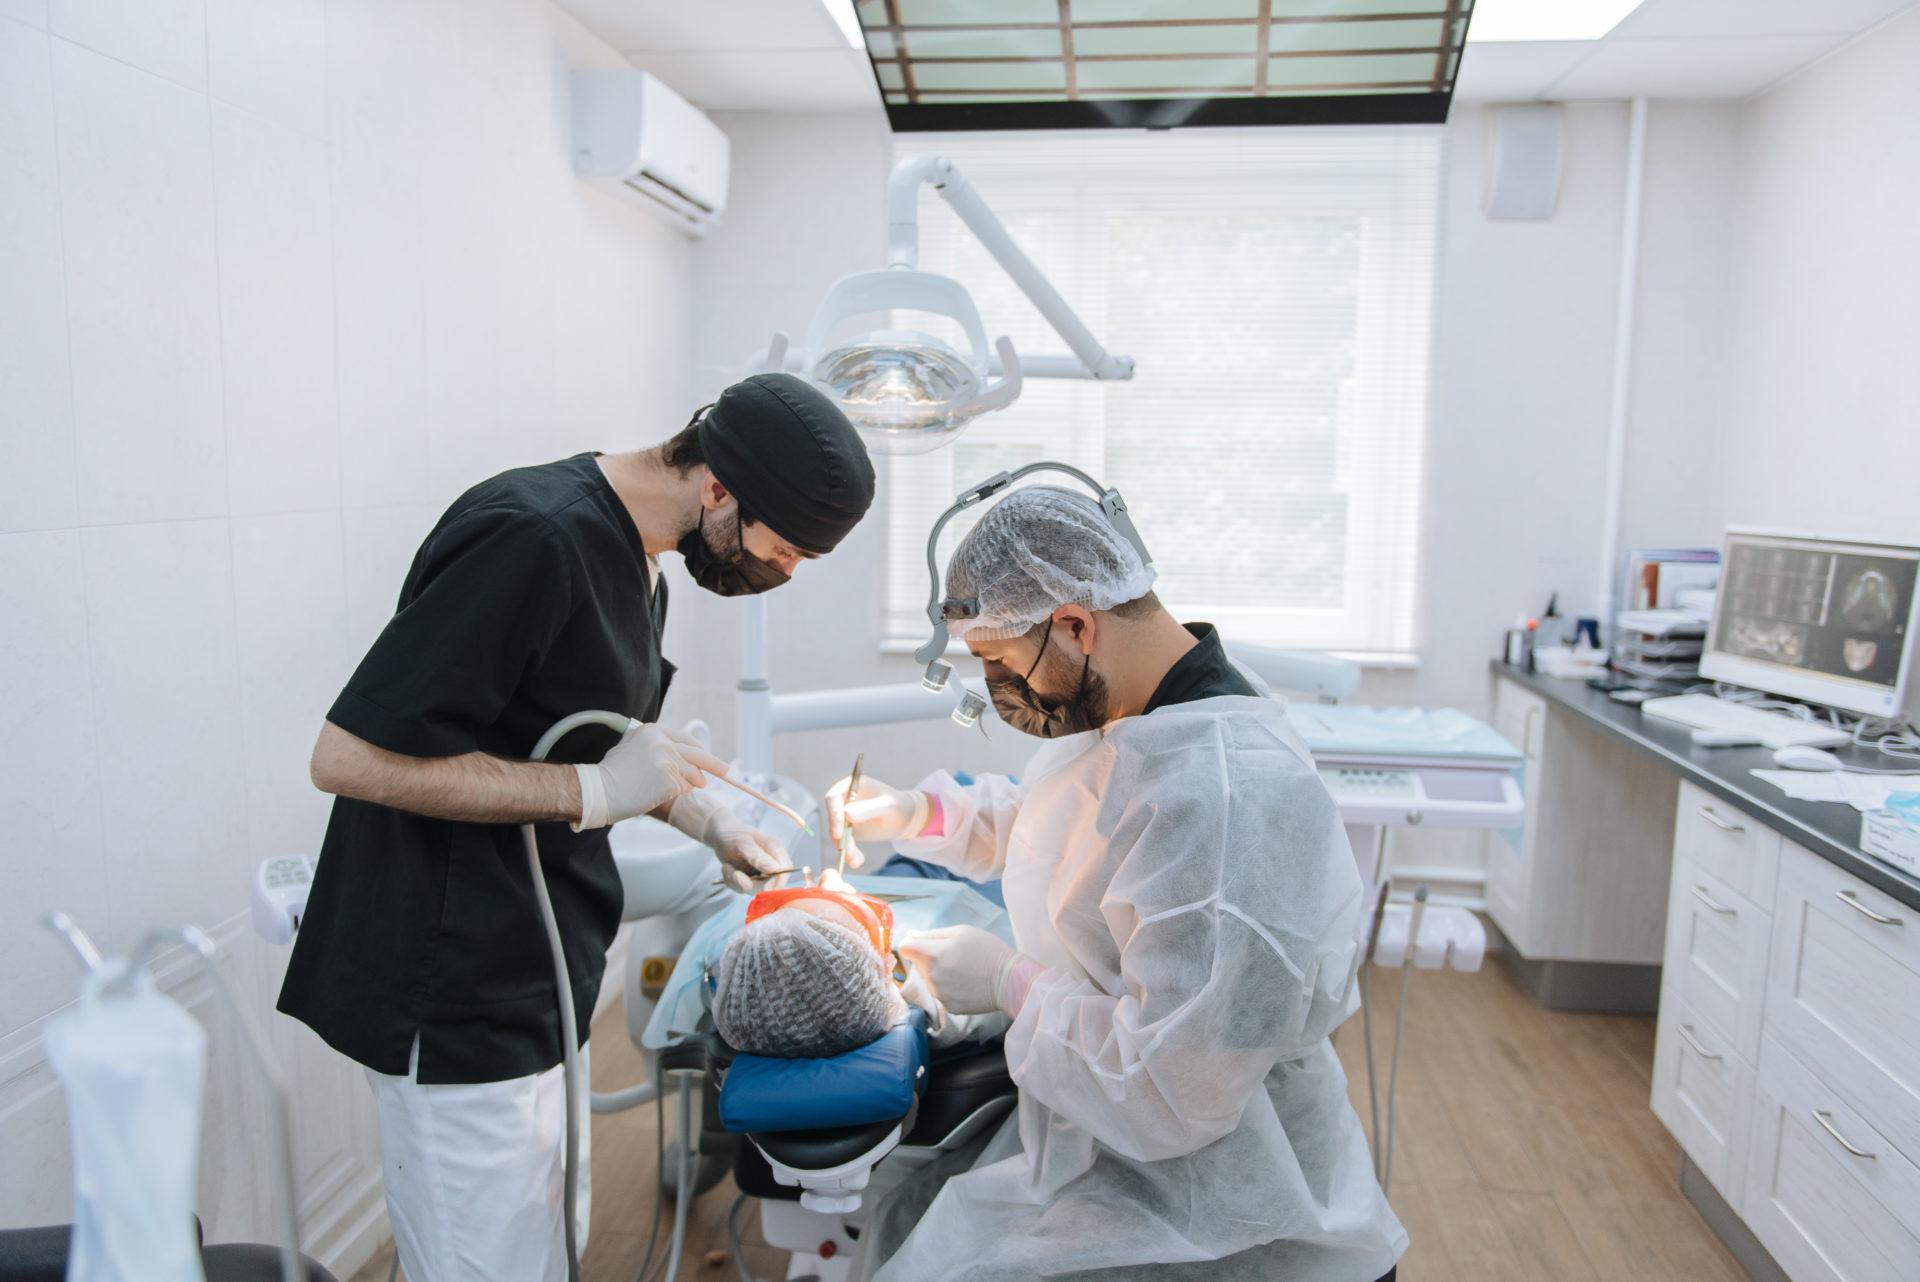 Имплантация зубов без костной пластики